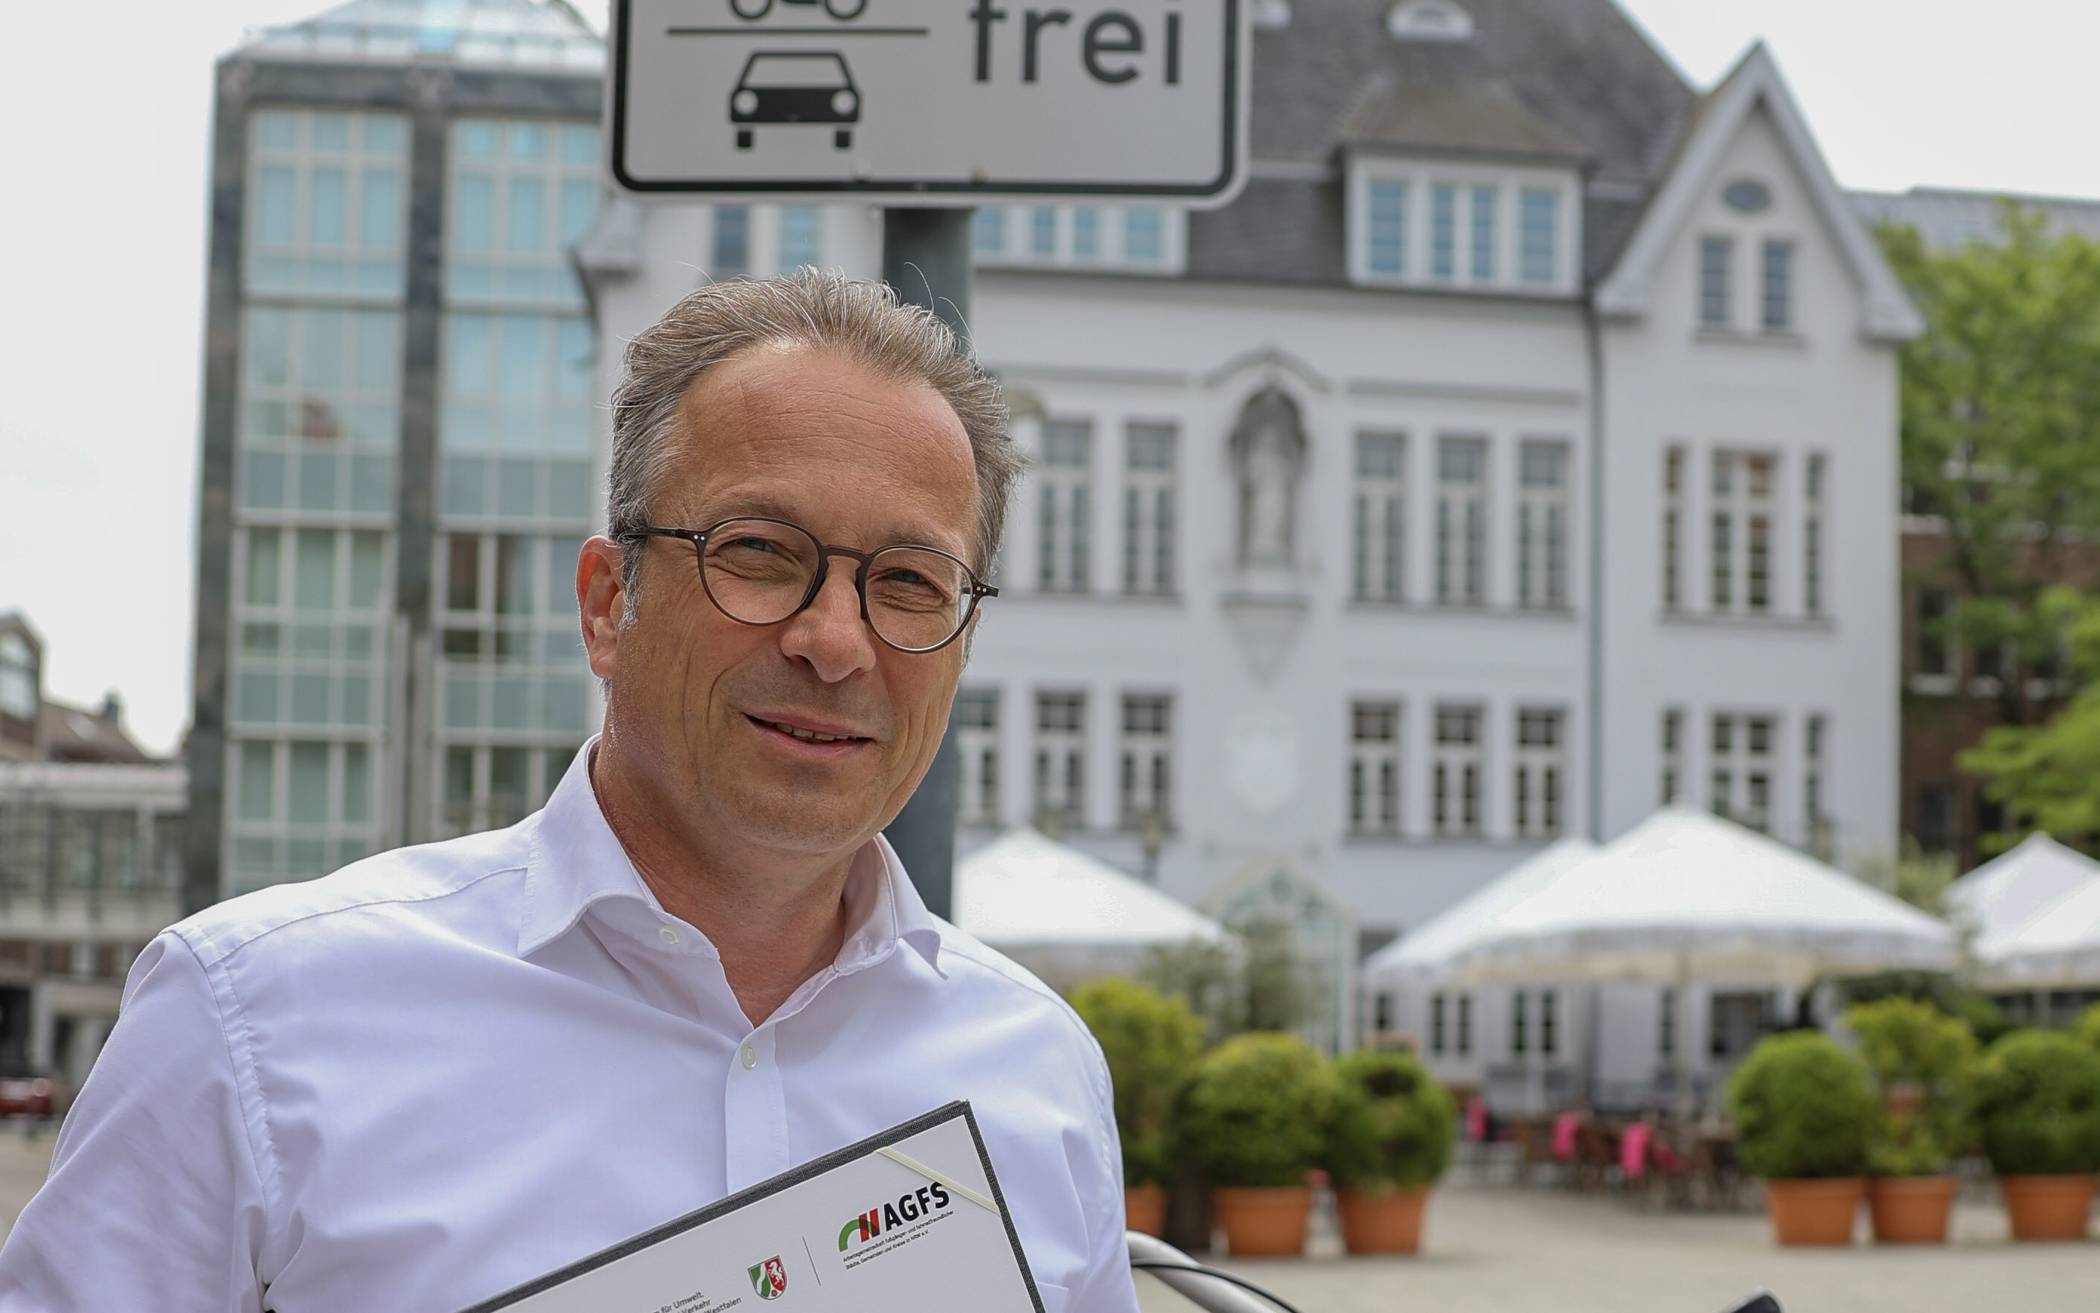 Bürgermeister Reiner Breuerwill Neuss fahrradfreundlicher gestalten.